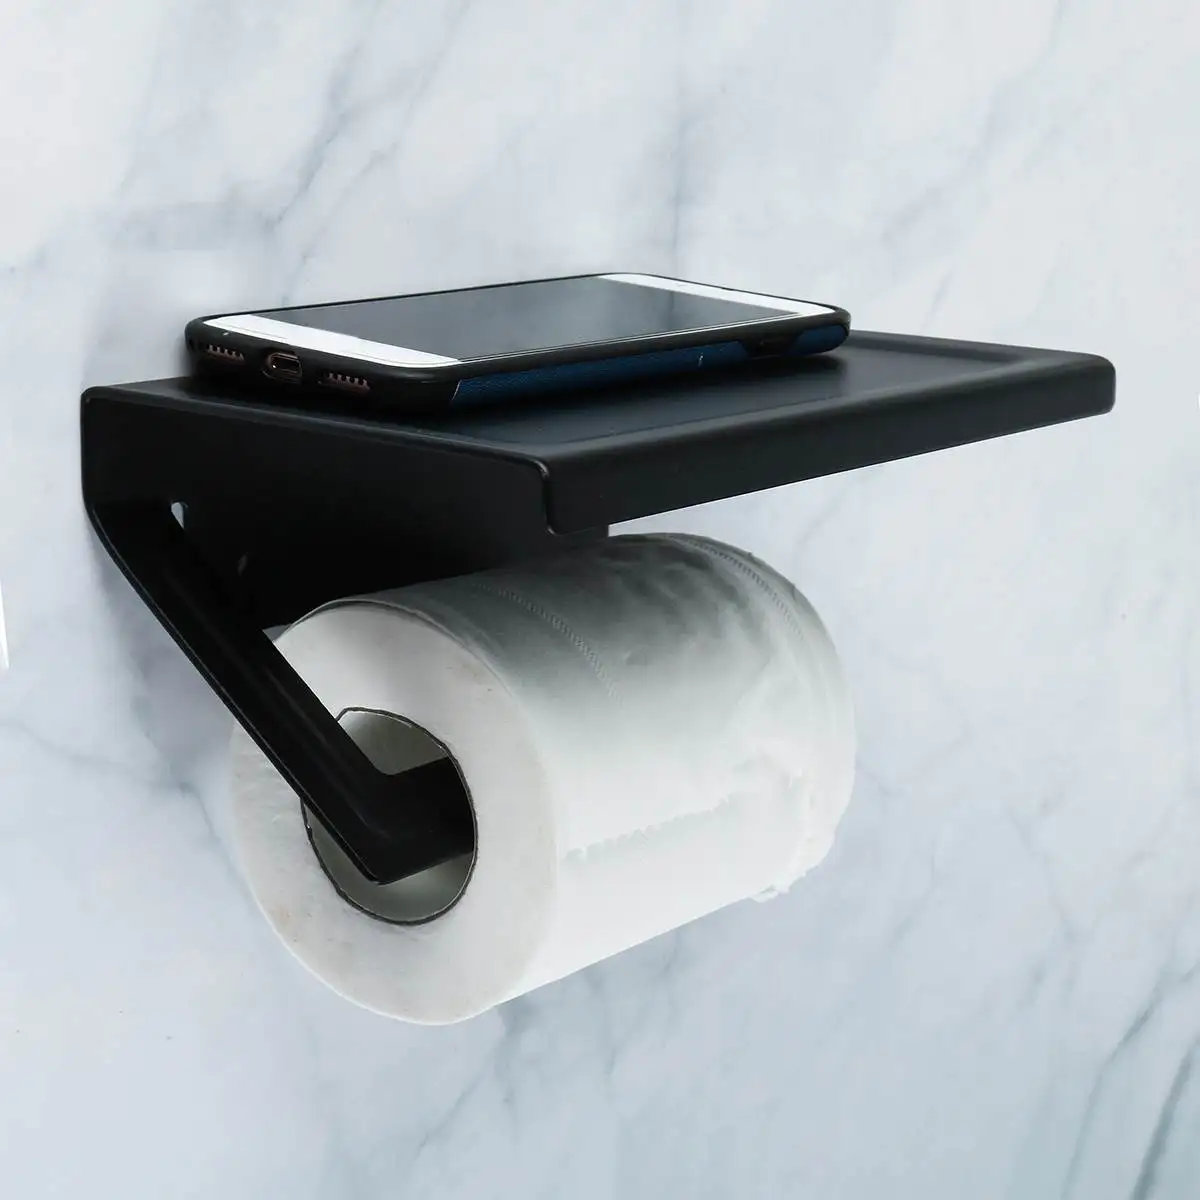 Держатель для туалетной бумаги, вешалка для полотенец в туалет бумажная липучка и держатель для телефона, держатель для бумаги с полкой, черный, серебристый